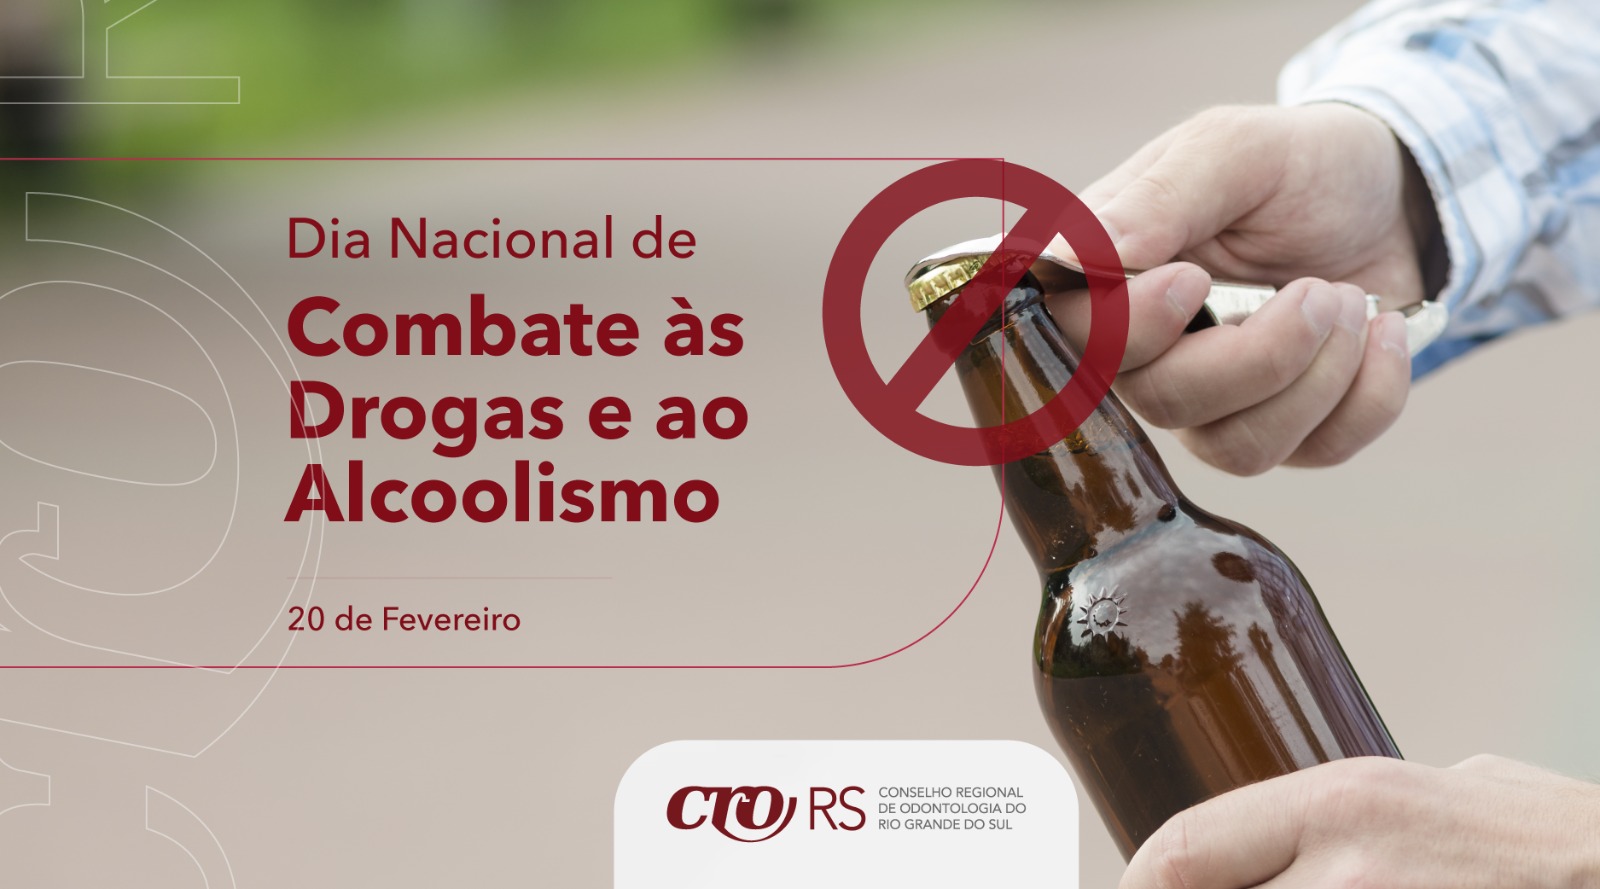 20 DE FEVEREIRO - DIA NACIONAL DE COMBATE ÀS DROGAS E AO ALCOOLISMO